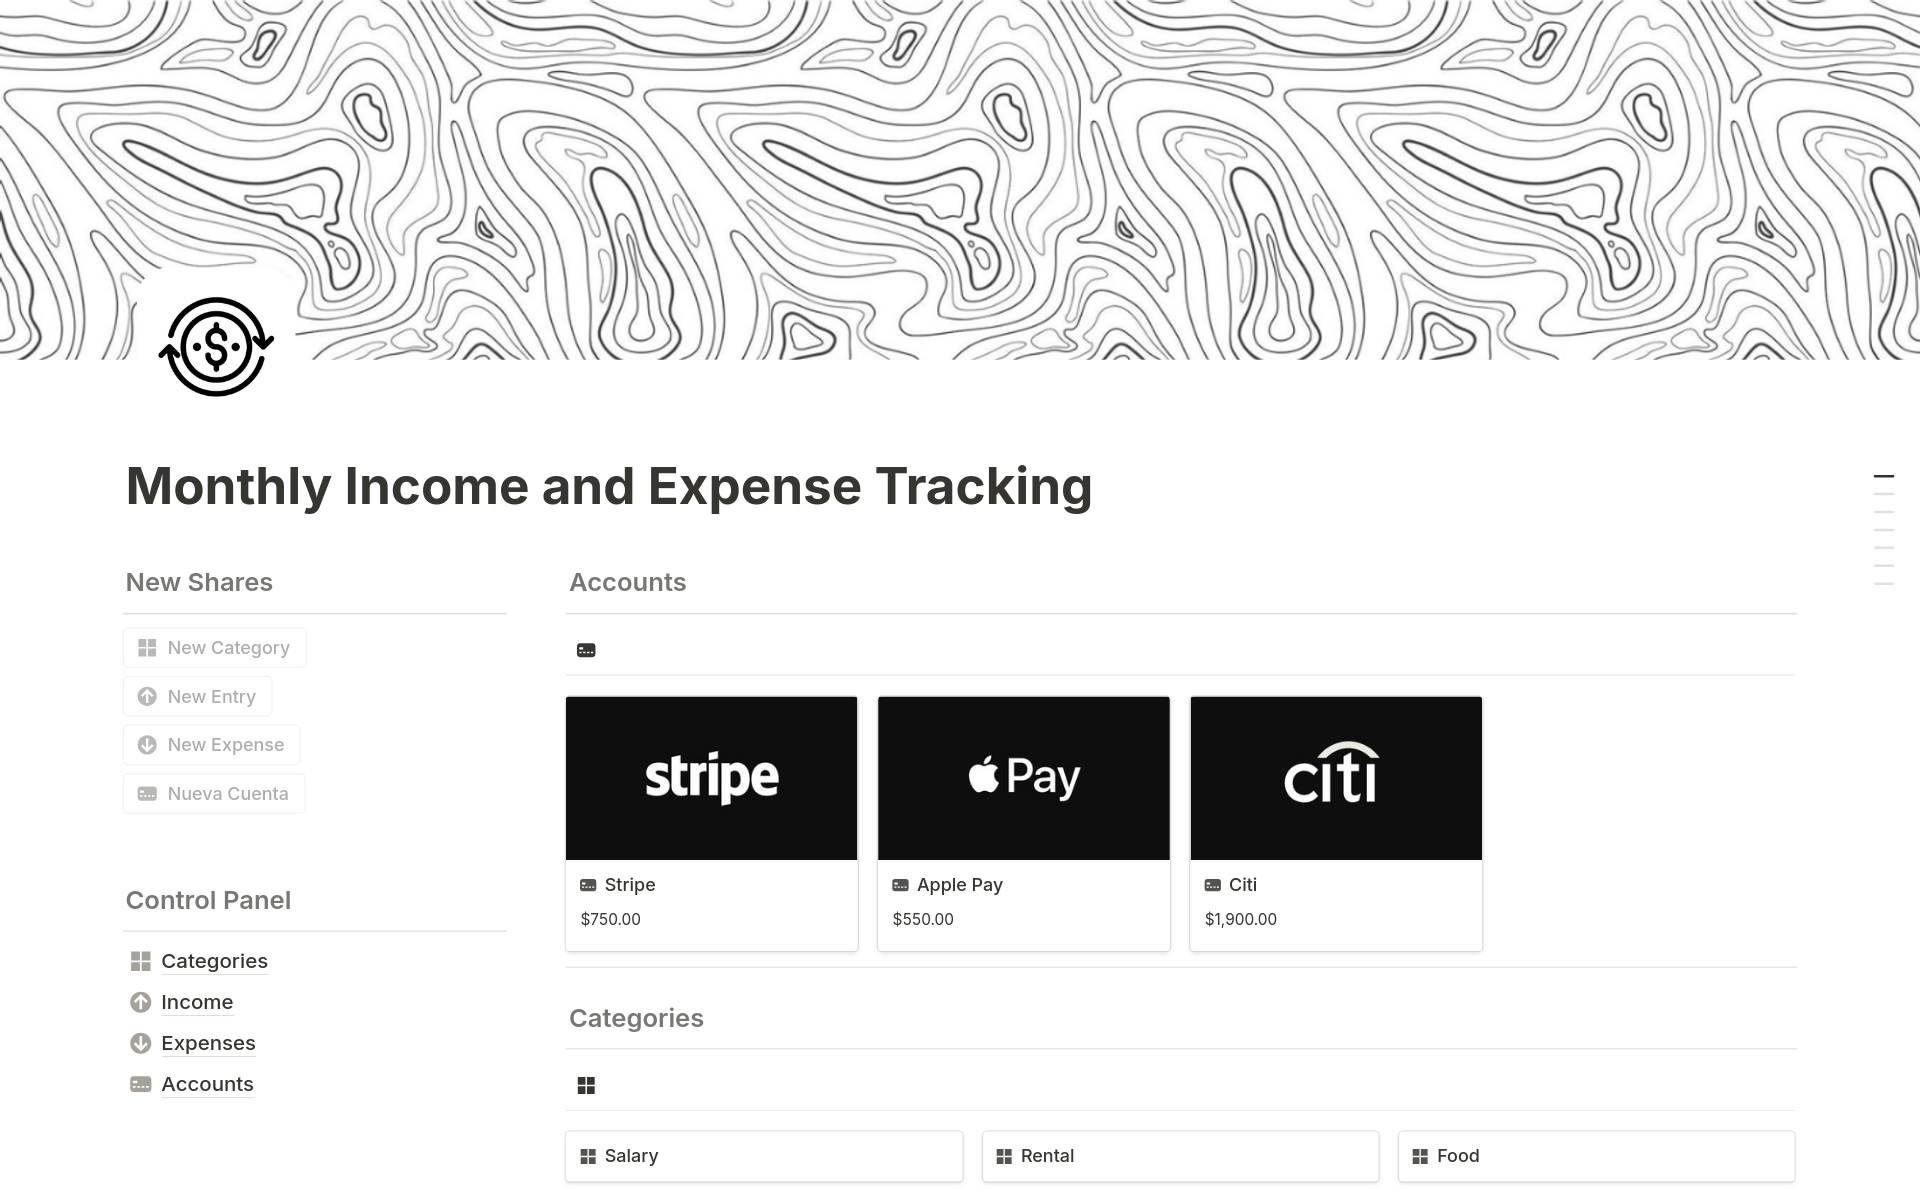 Uma prévia do modelo para Monthly Income and Expense Tracking